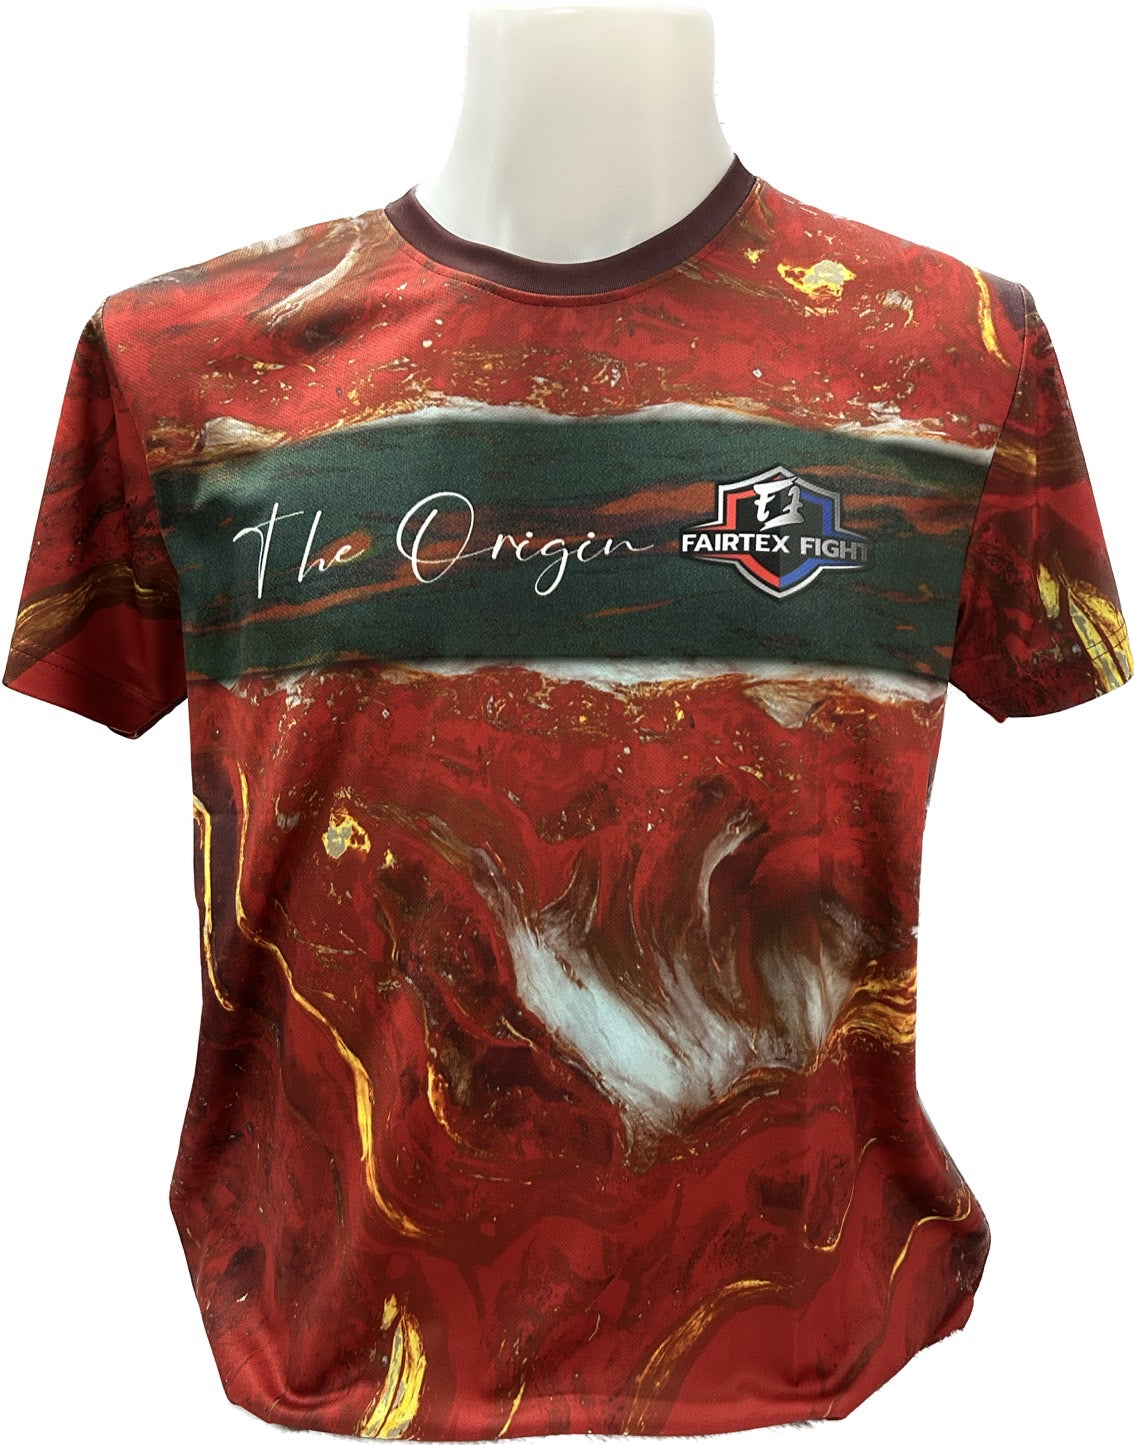 Fairtex Fight T-Shirt The Origin Red